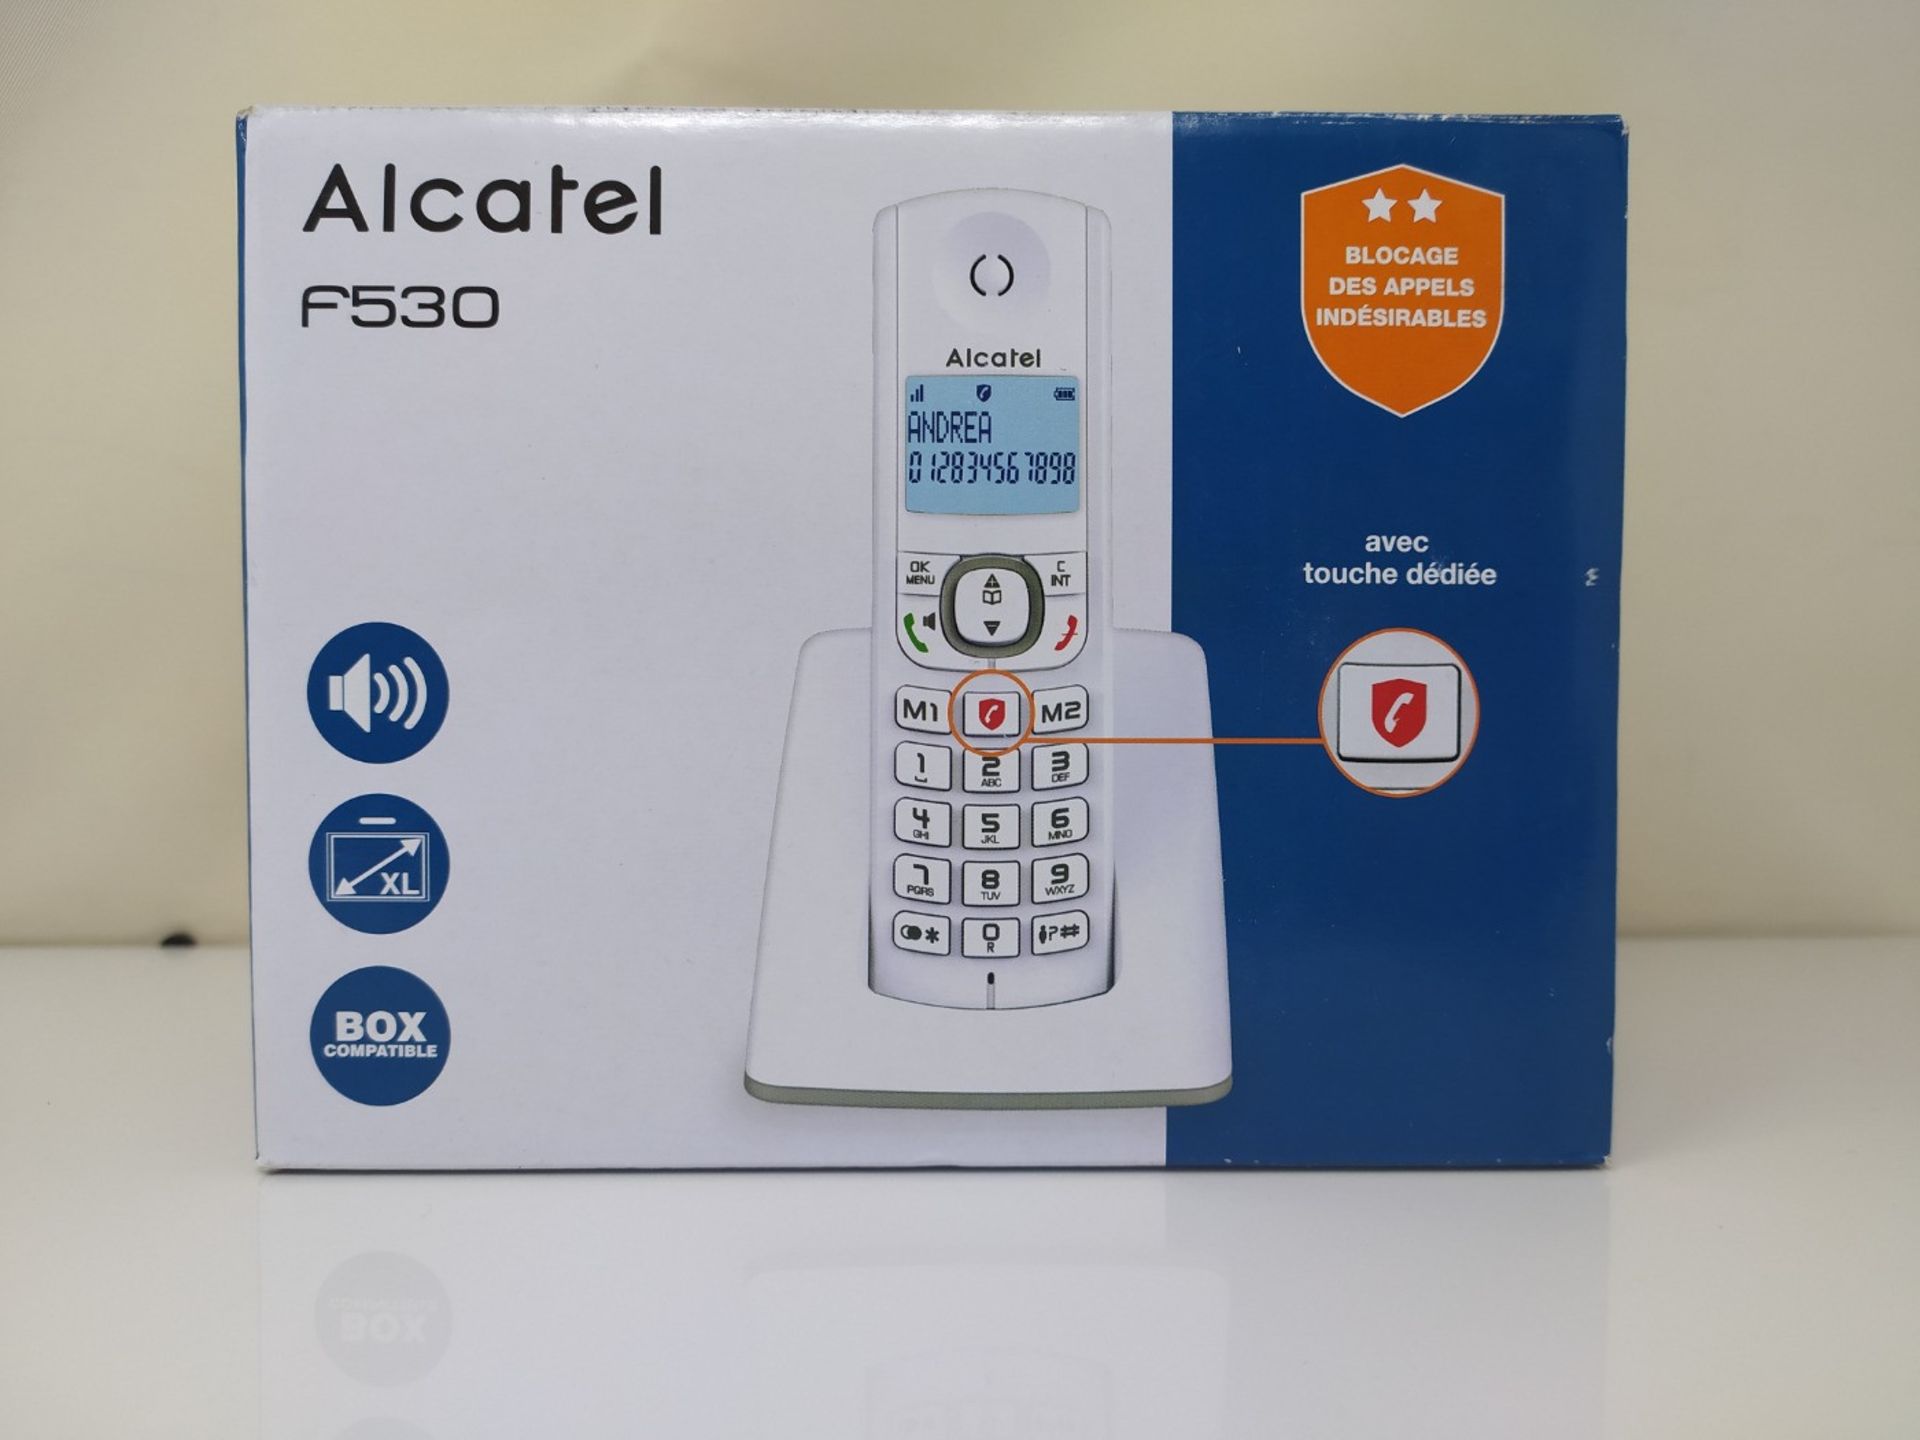 Alcatel F530 - Téléphone sans fil DECT, Mains libres, Grand écran rétroéclairé, - Image 2 of 3